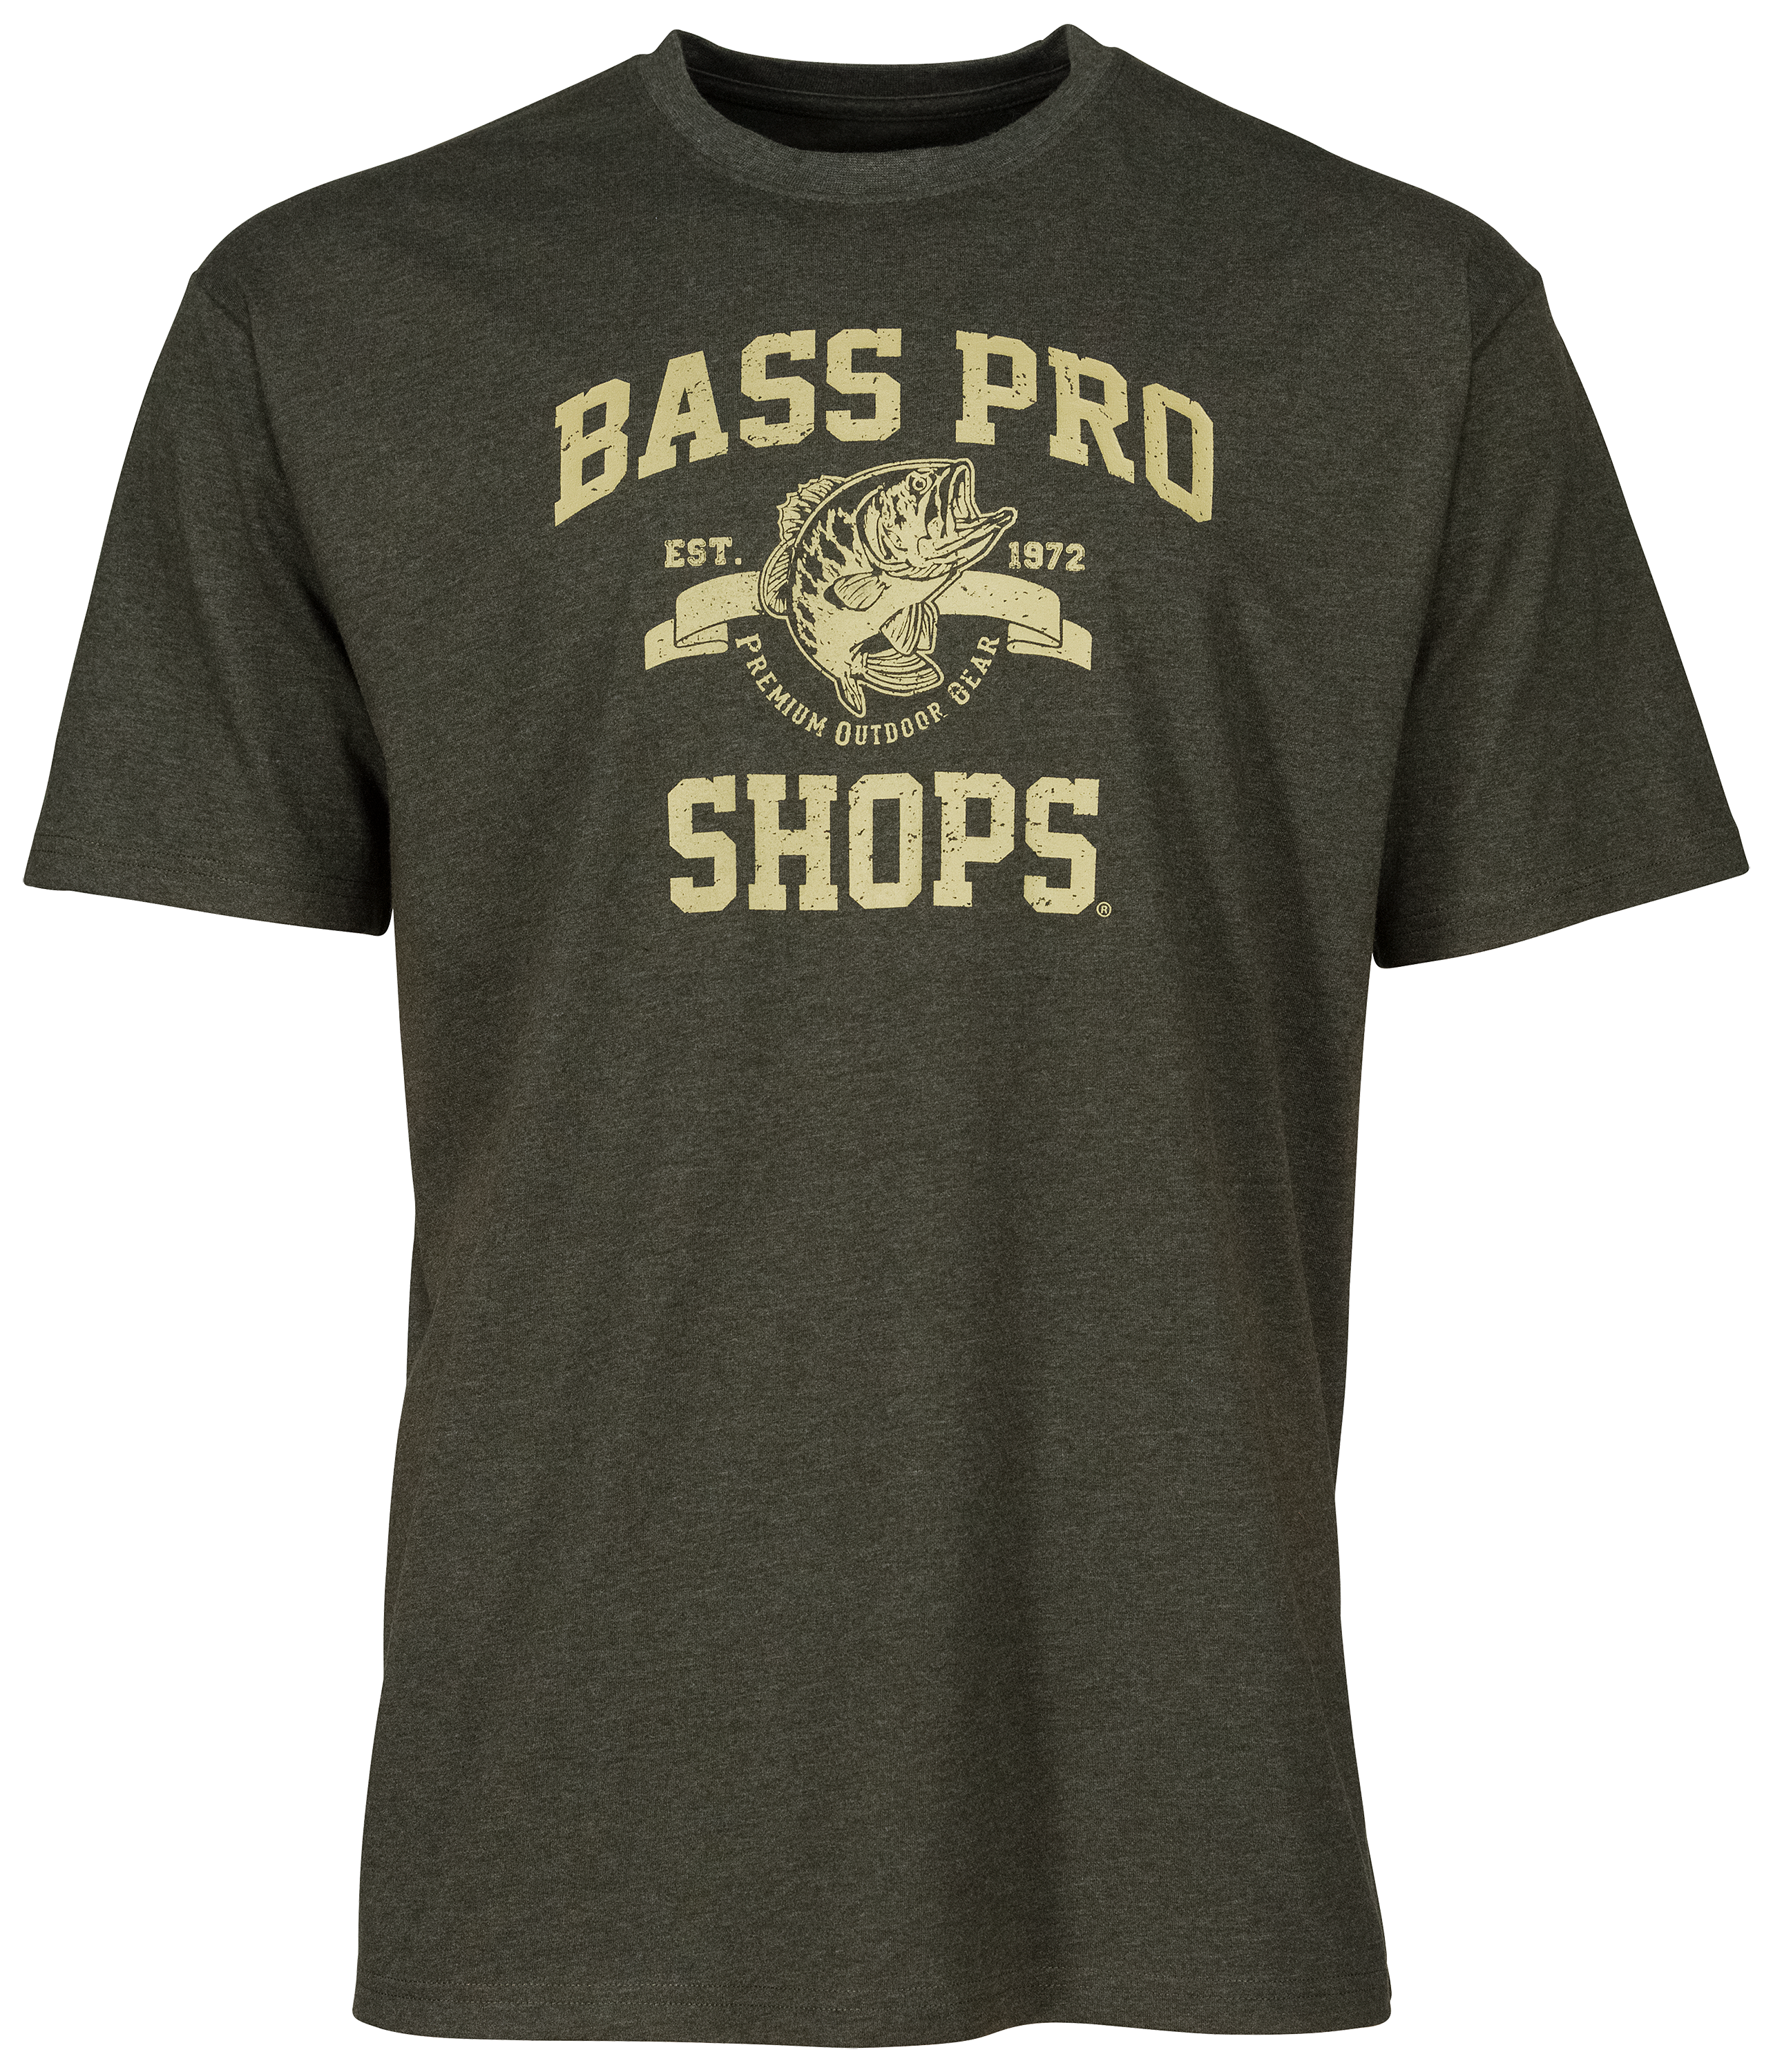 Bass Pro Shops 1972 Logo T-Shirt for Men - Navy - 2XL